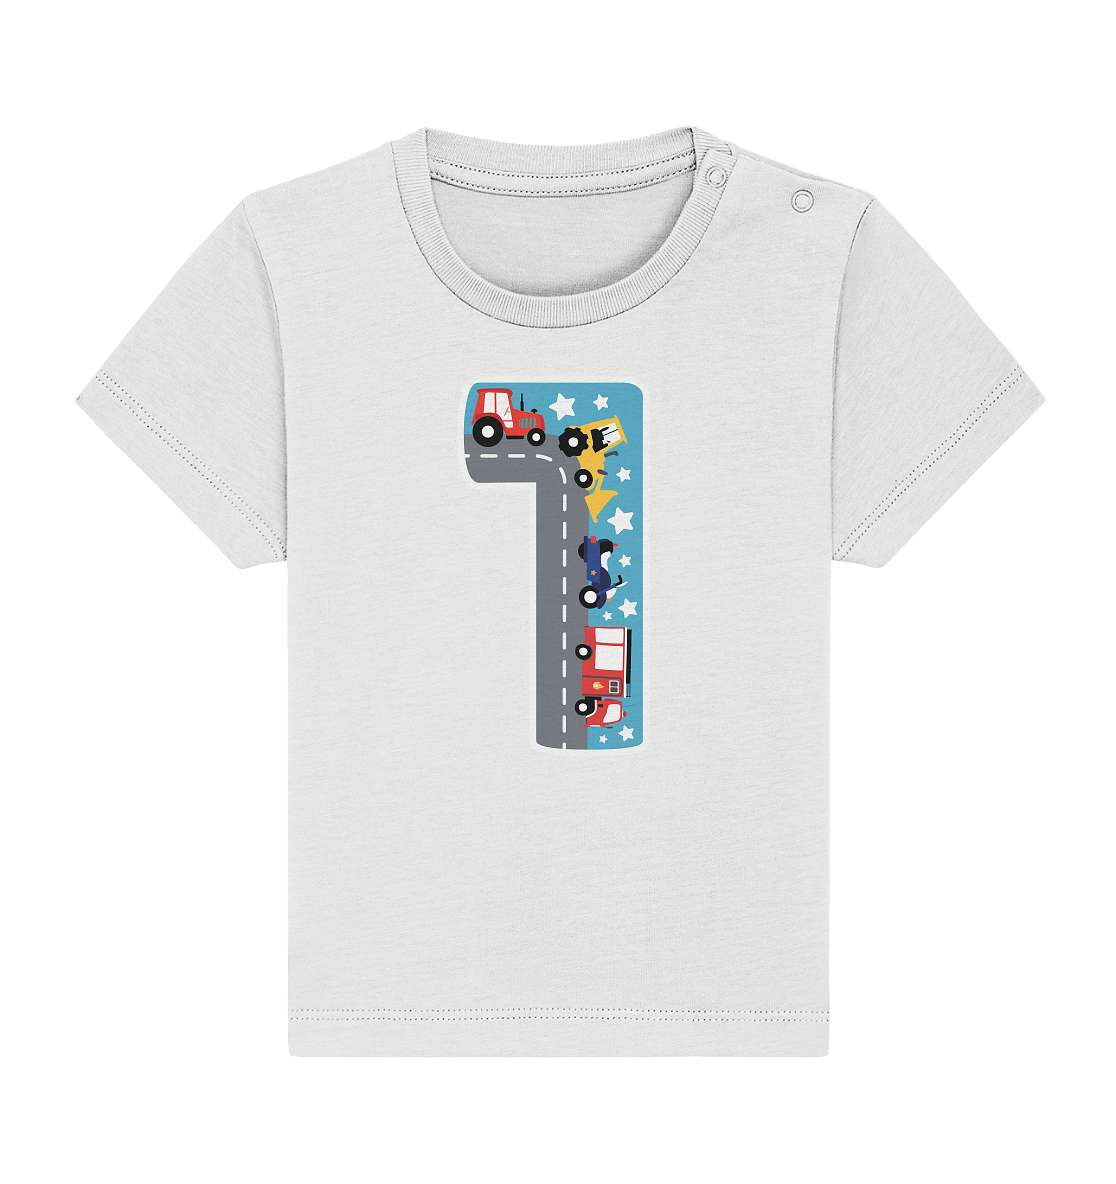 1. Kinder Geburtstag - Autos Spielteppich Style - Ich bin 1 Jahre - Geschenk - Baby Organic Shirt